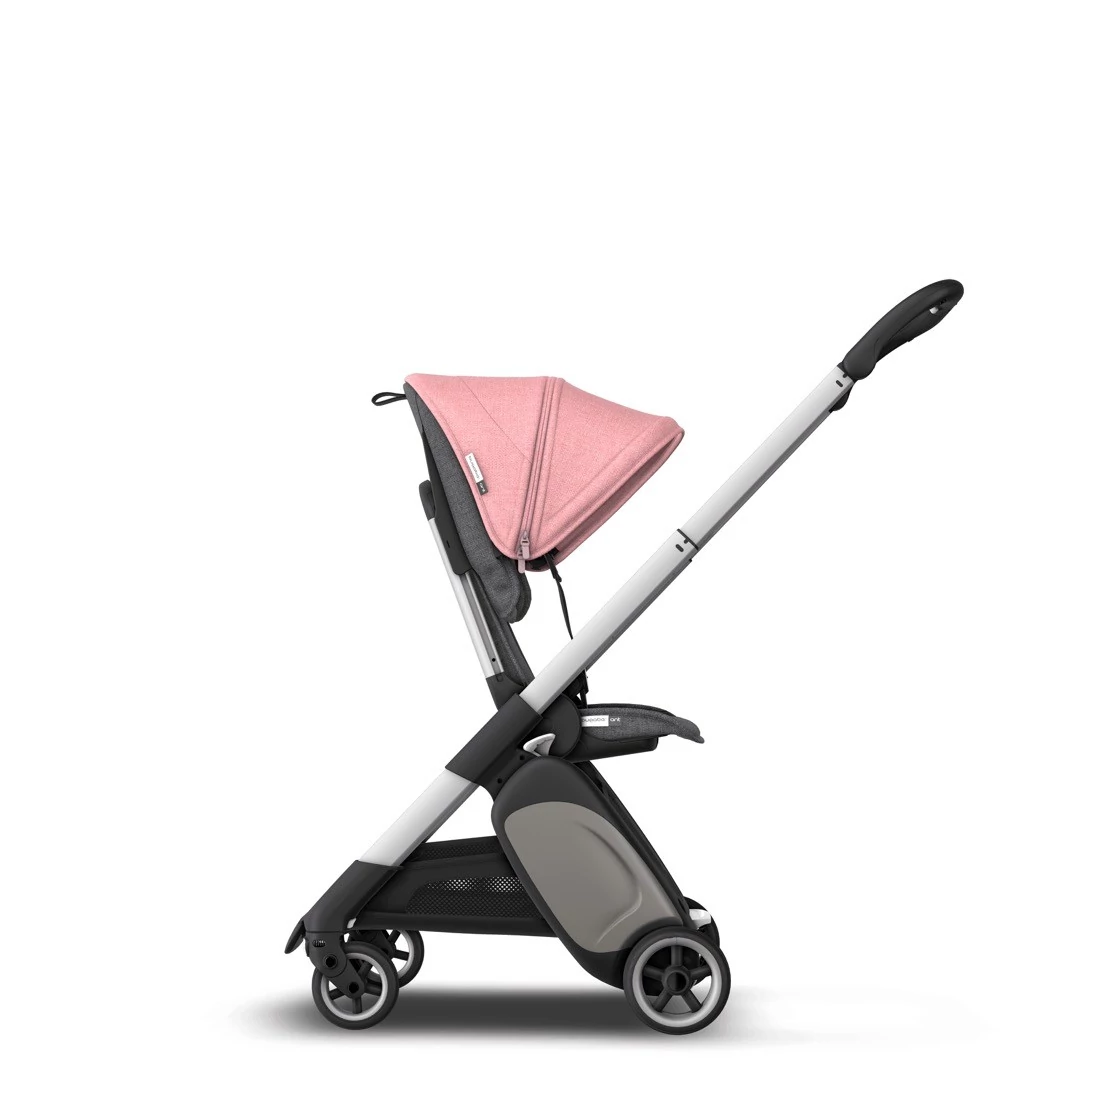 Компактную прогулочную коляску Bugaboo Ant Alu / Grey Melange-Pink Melange можно купить на серебристой раме с ярким розовым капором